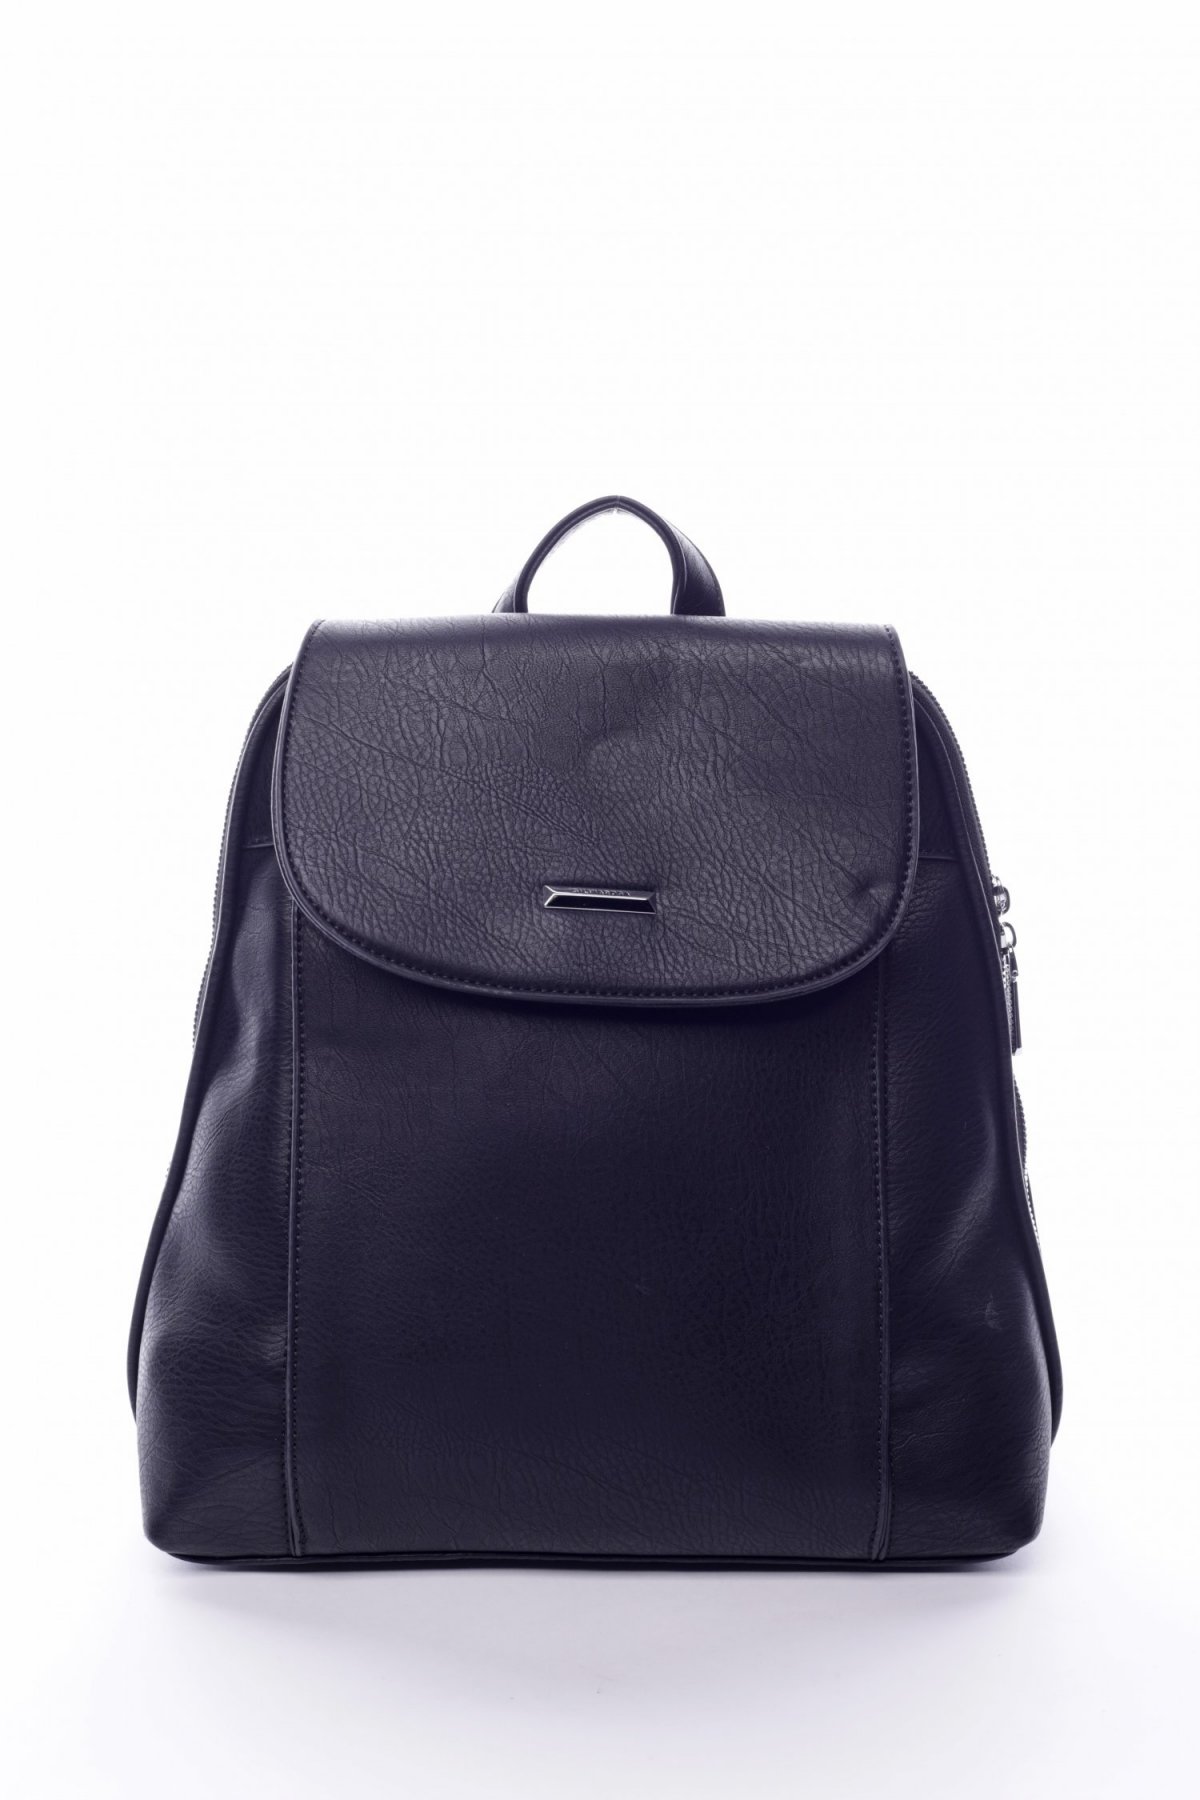 Dámský městský batoh kabelka černý - Silvia Rosa Polan